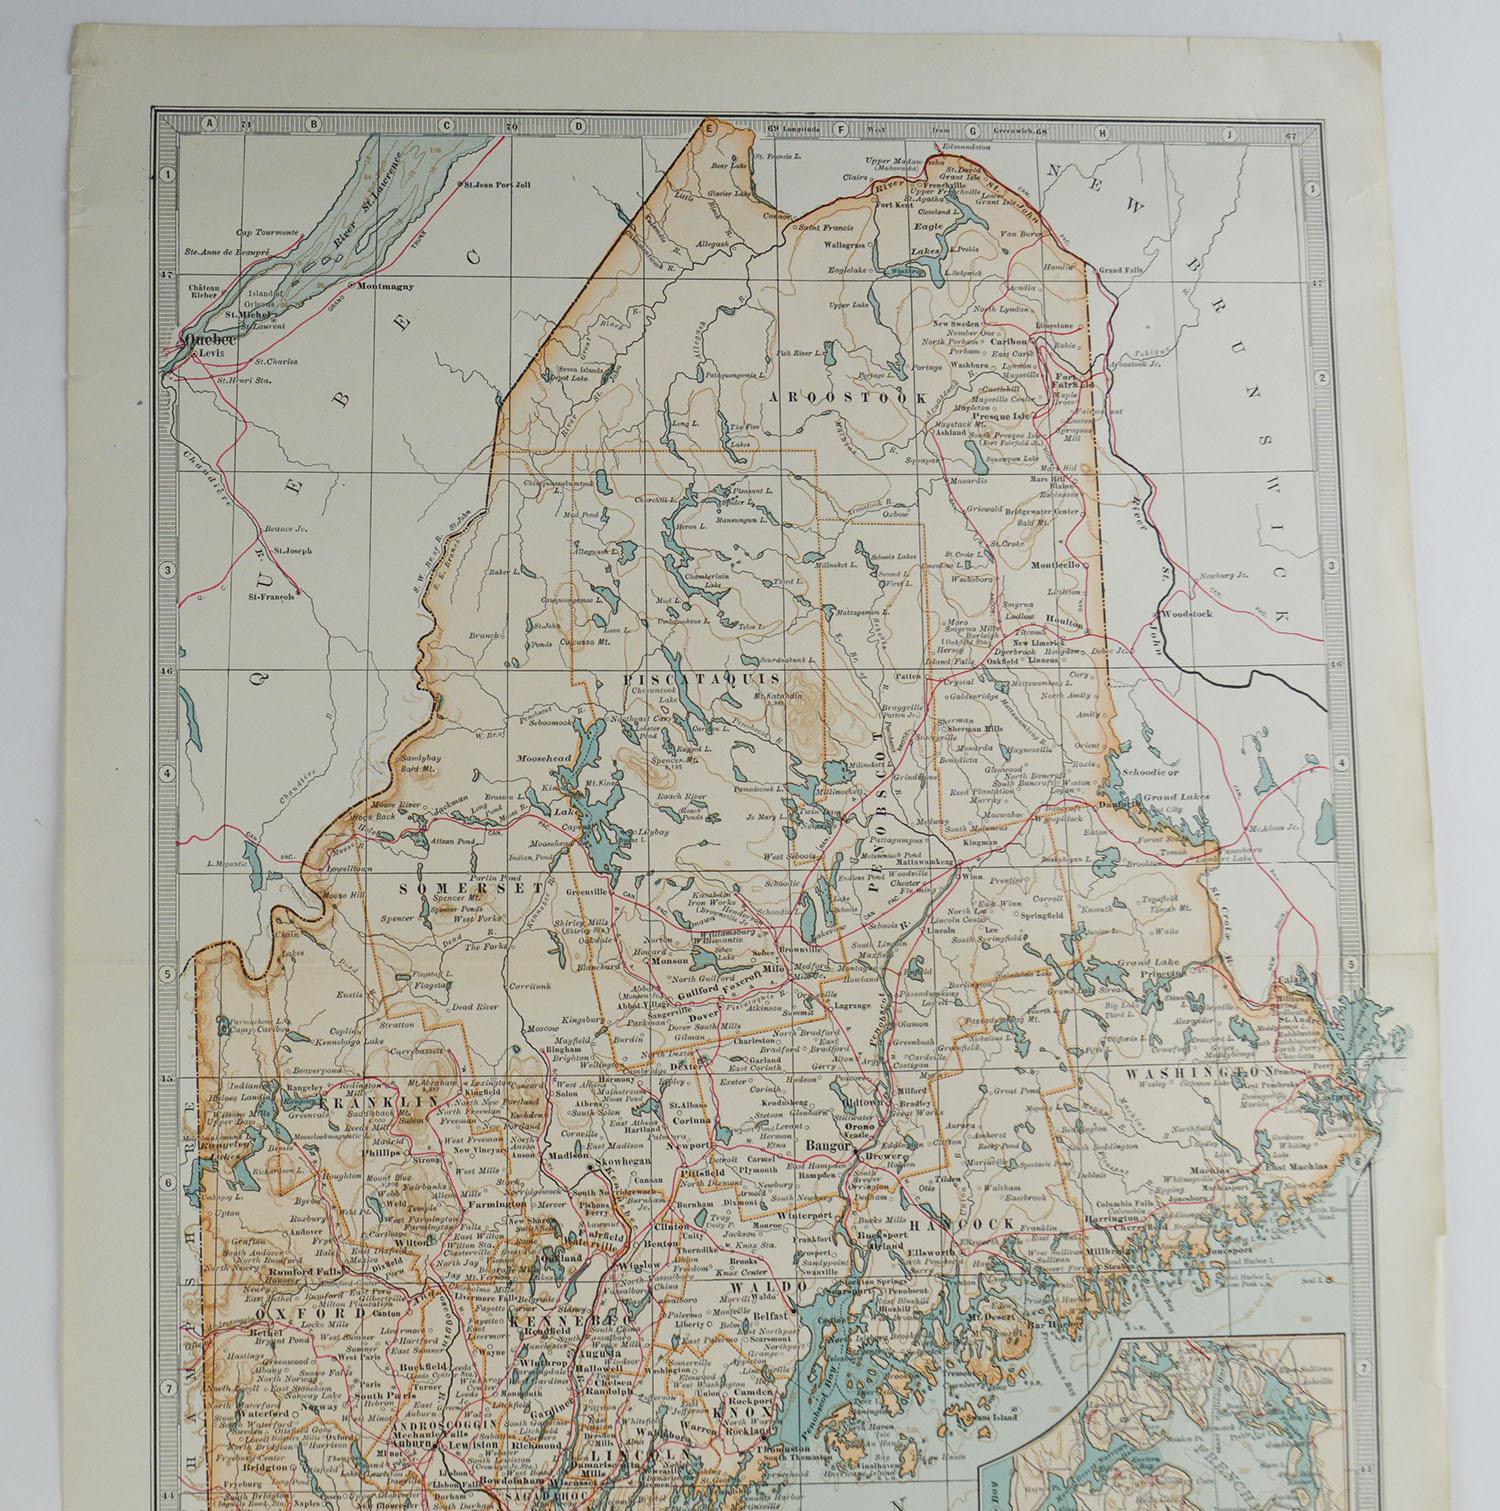 Other Original Antique Map of Maine, circa 1890